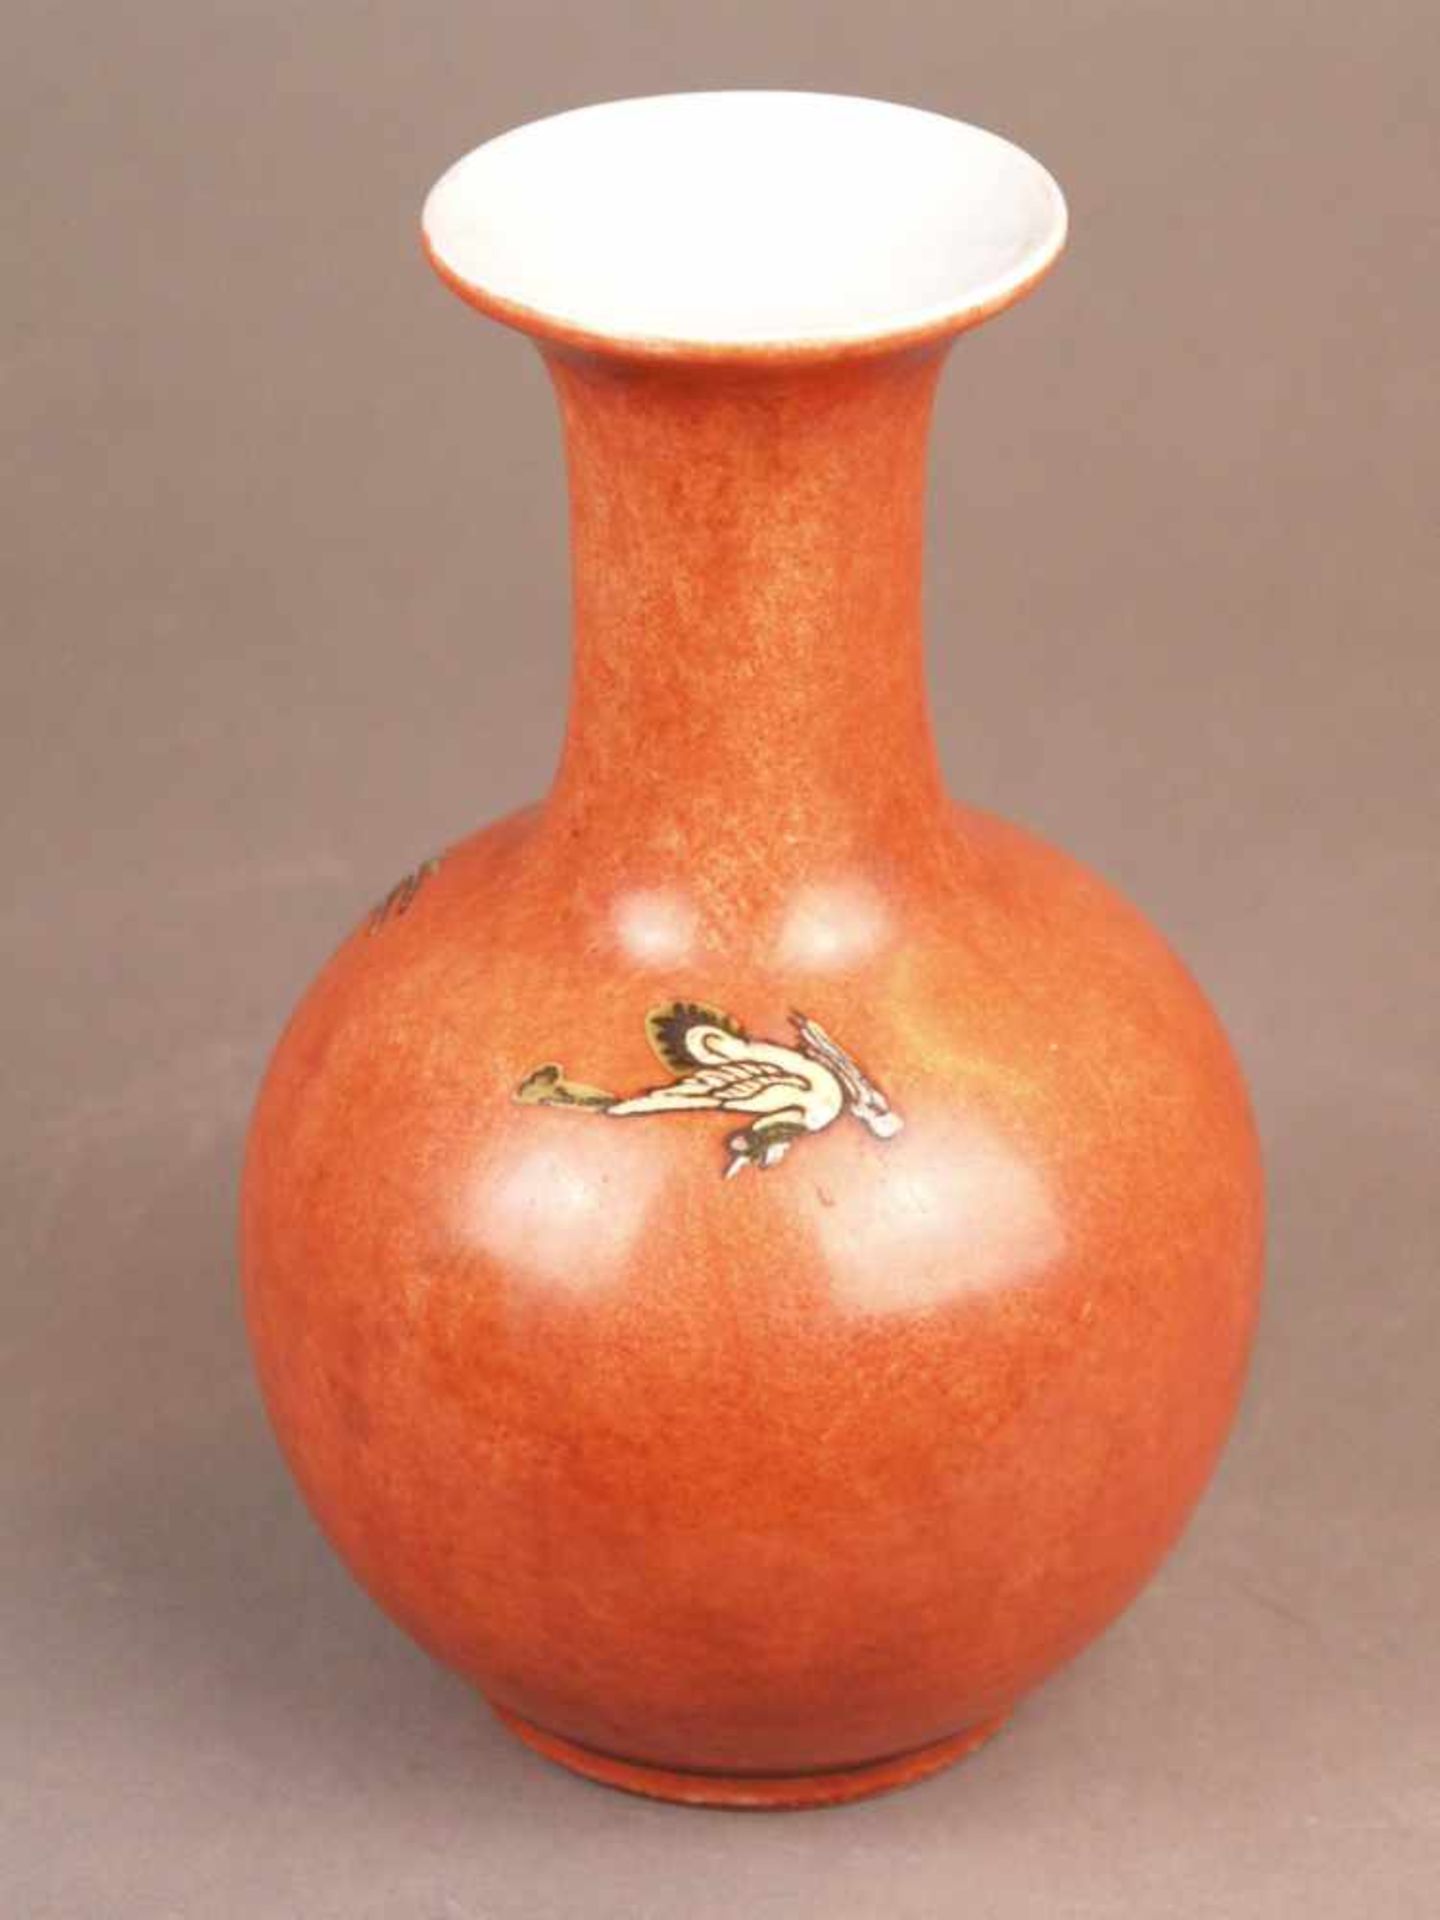 Vase - Tian qiu ping, rote Glasur in der Art der Pfirsichblütenglasuren sowie Darstellung zweier - Bild 2 aus 8